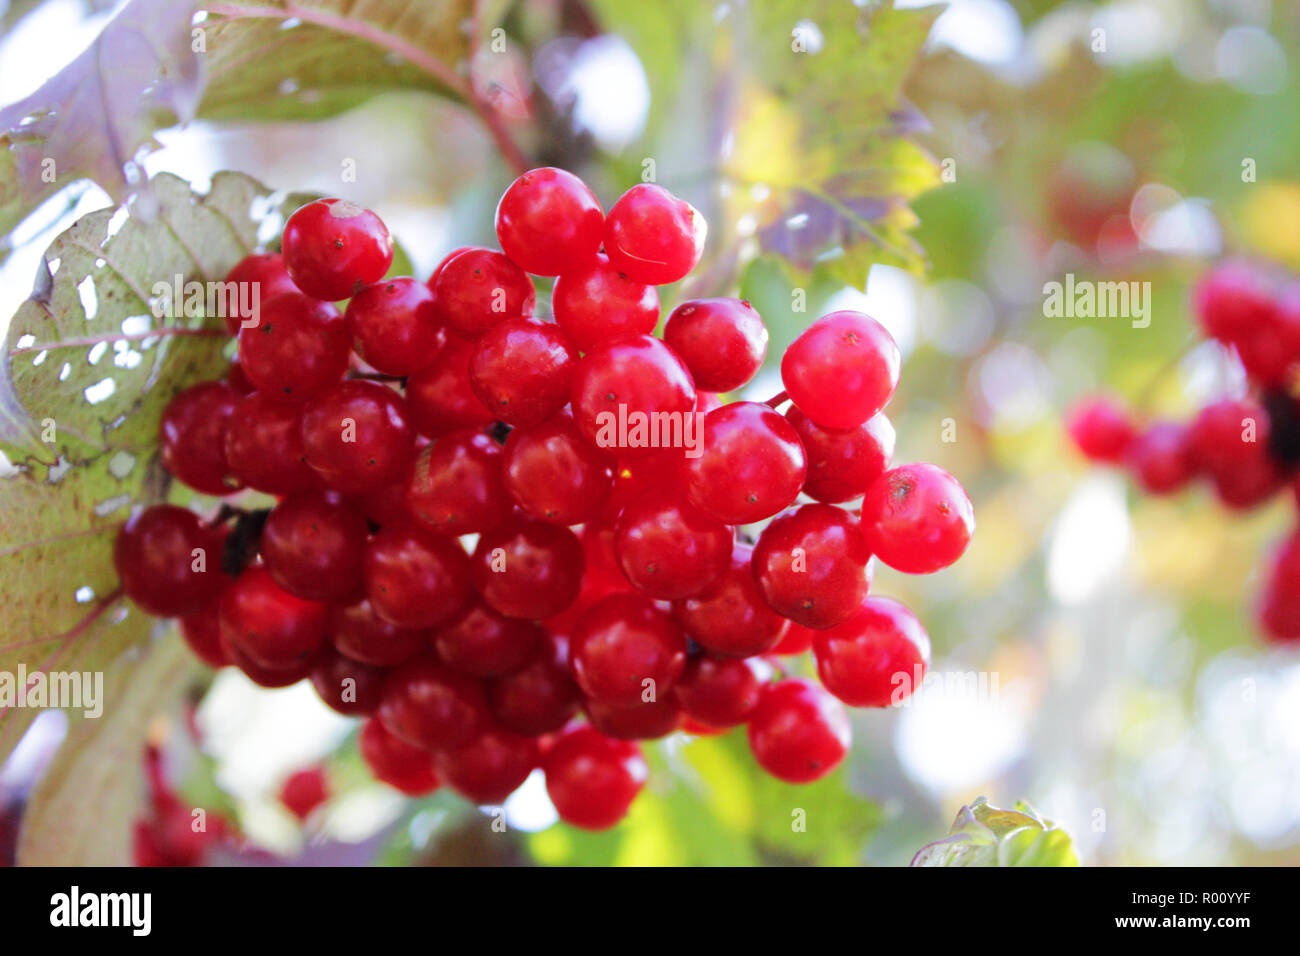 Viburnum shrub, with ripe clusters of viburnum berries. Autumn background Stock Photo